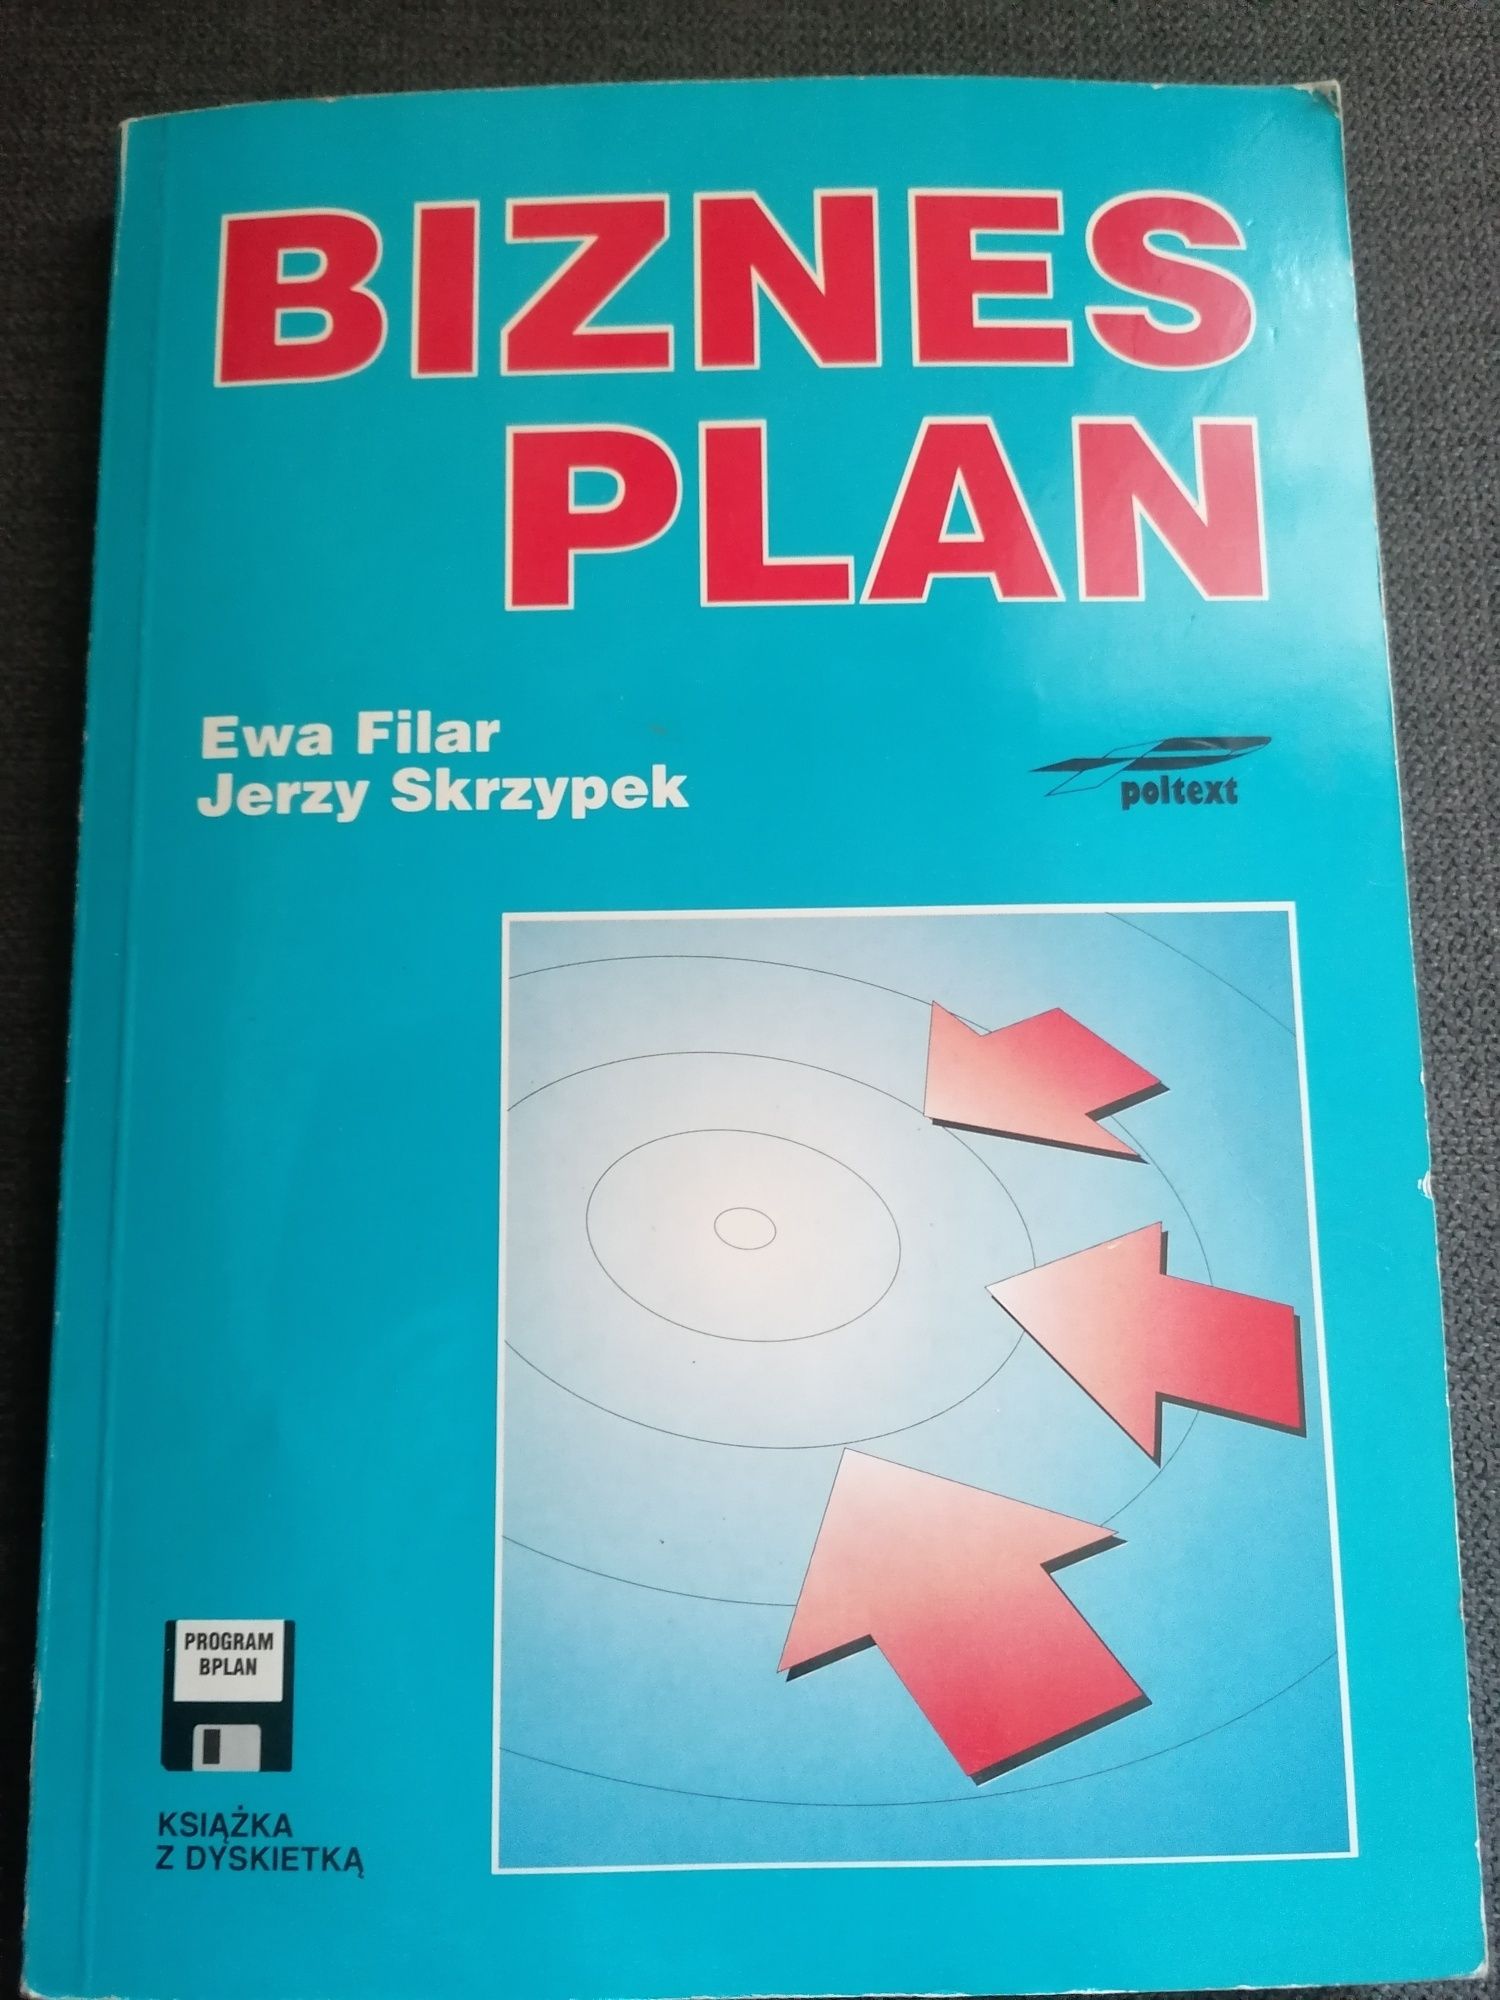 Sprzedam książkę Biznes plan Ewa Filar, Jerzy Skrzypek